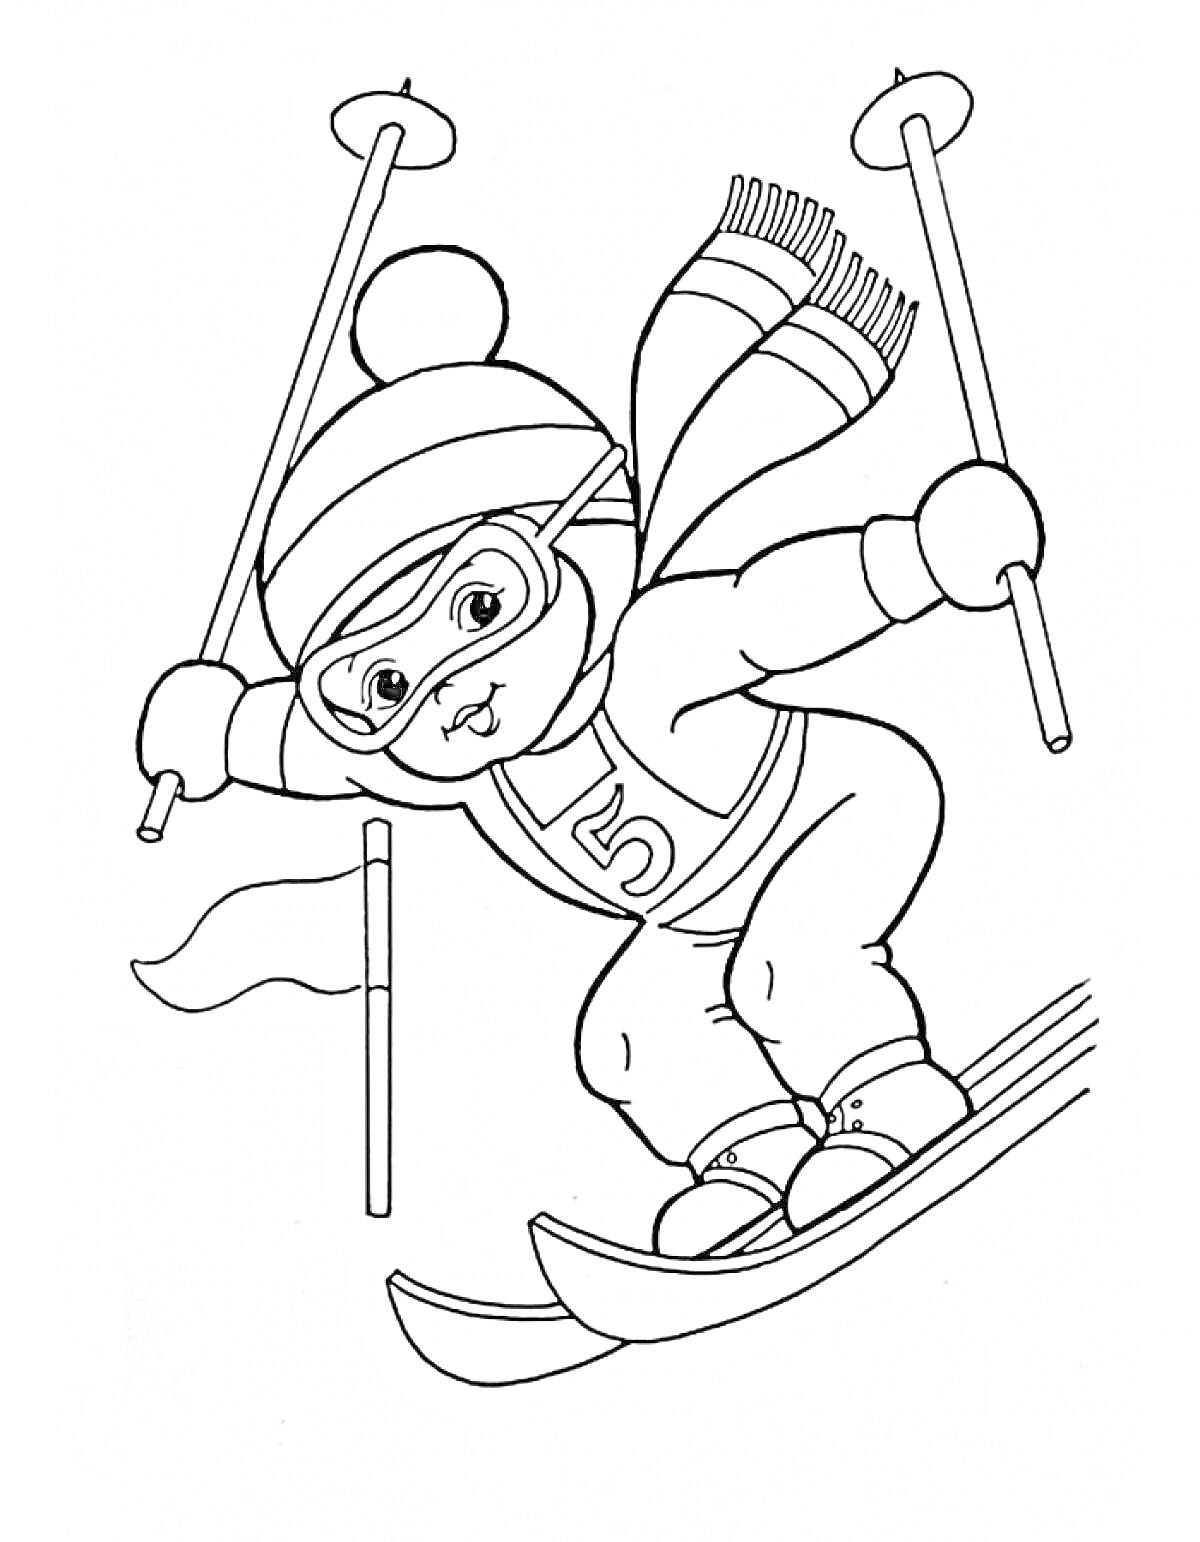 Раскраска Мишка на лыжах с палками, в костюме со шарфом, шапкой и очками, возле флага